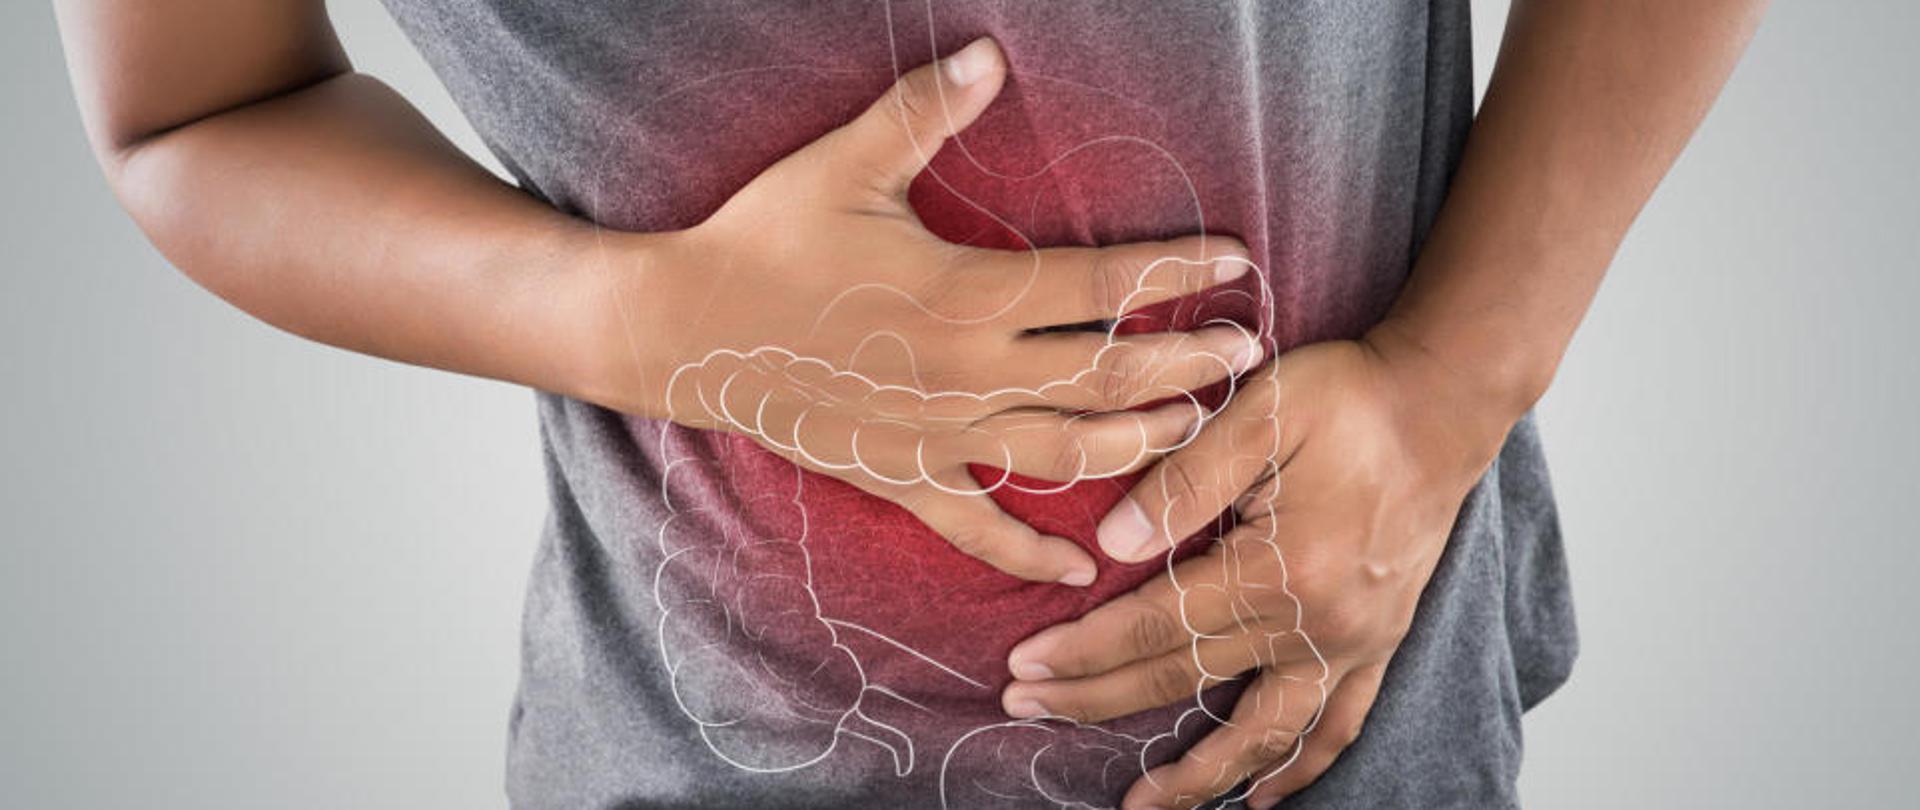 Na zdjęciu widoczne ręce trzymające brzuch. Na środku obrazka widoczny znak wodny jelit i żołądka. Siwa koszulka na brzuchu w kolorze czerwonym symbolizuje stan zapalny brzucha. Postać wygięta do przodu na znak boleści brzucha.